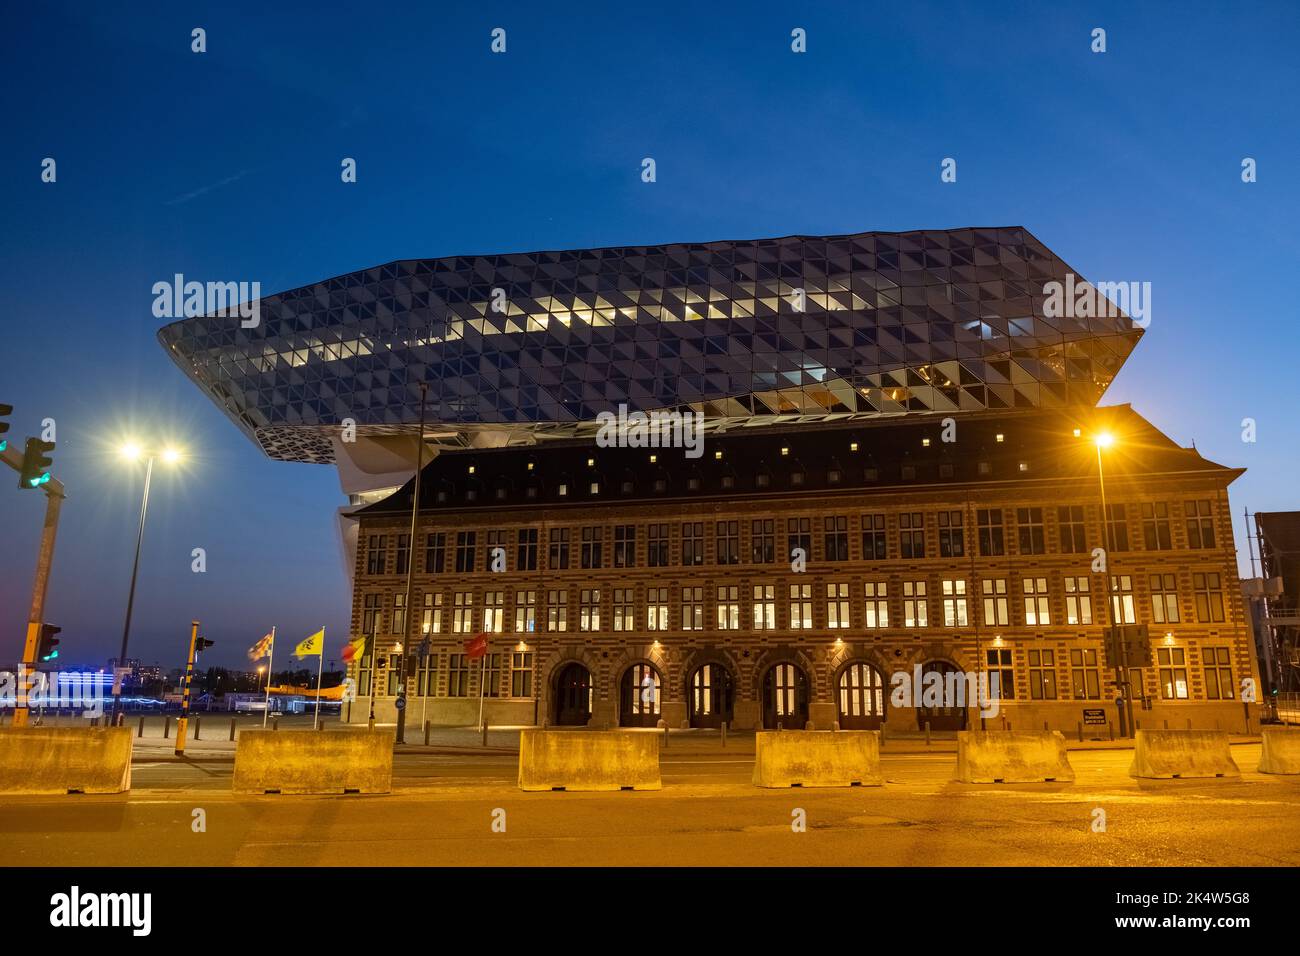 ANVERSA, BELGIO, 04 20 2022, il moderno edificio architettonico di riferimento come la casa portuale del porto di Anversa-Bruges nel centro della città di Anversa, come progettato dal famoso architetto Zaha Hadid. Foto di alta qualità Foto Stock